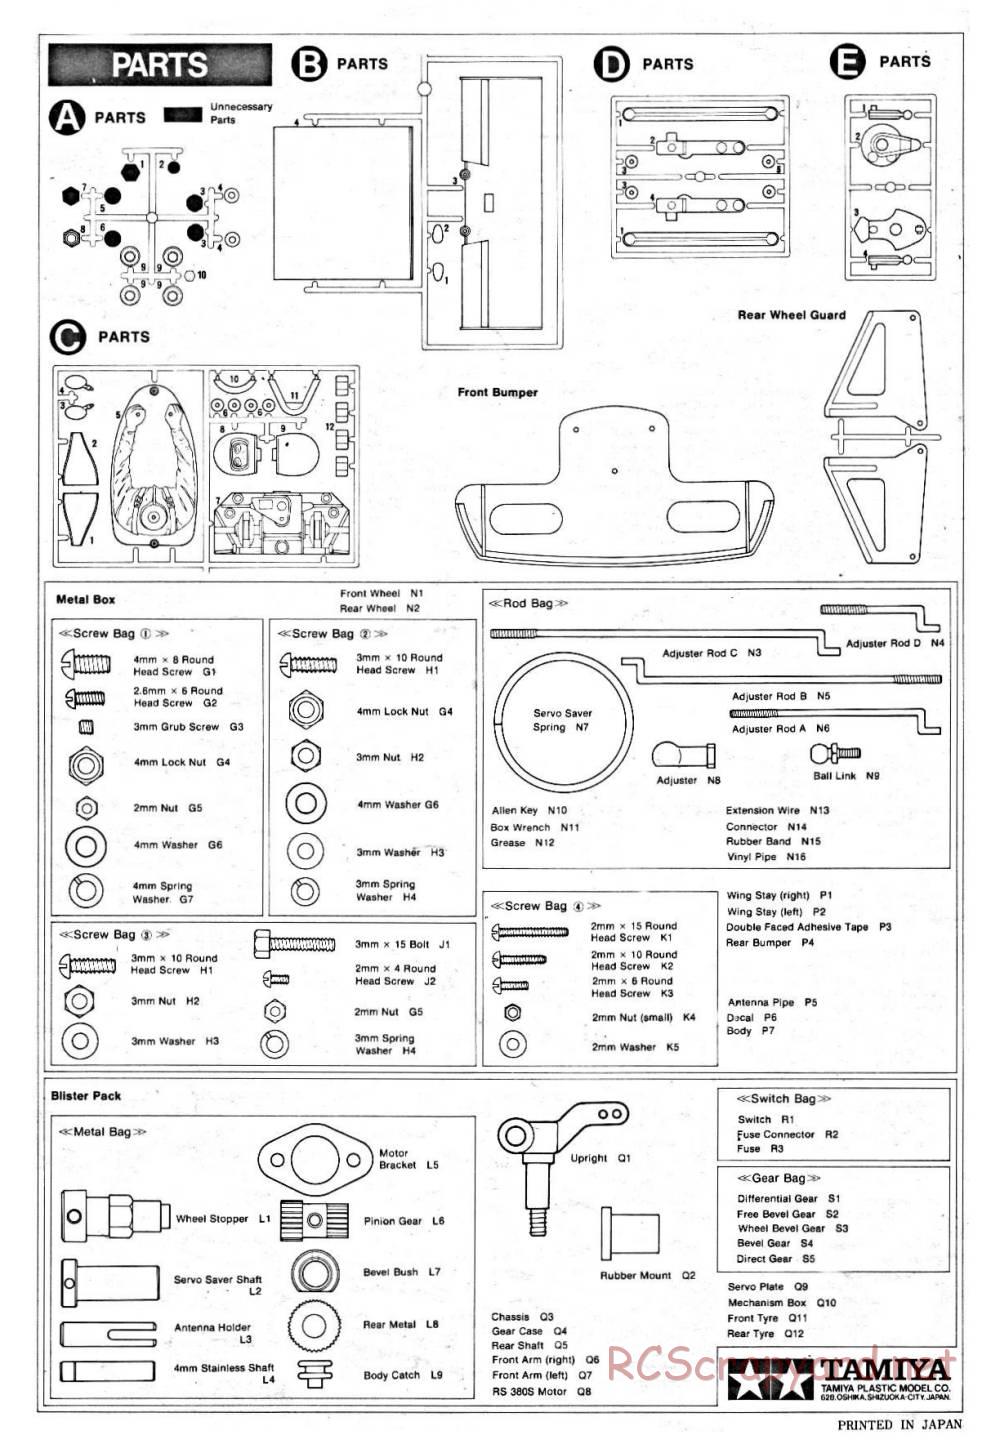 Tamiya - Ligier JS9 Matra - 58010 - Manual - Page 16